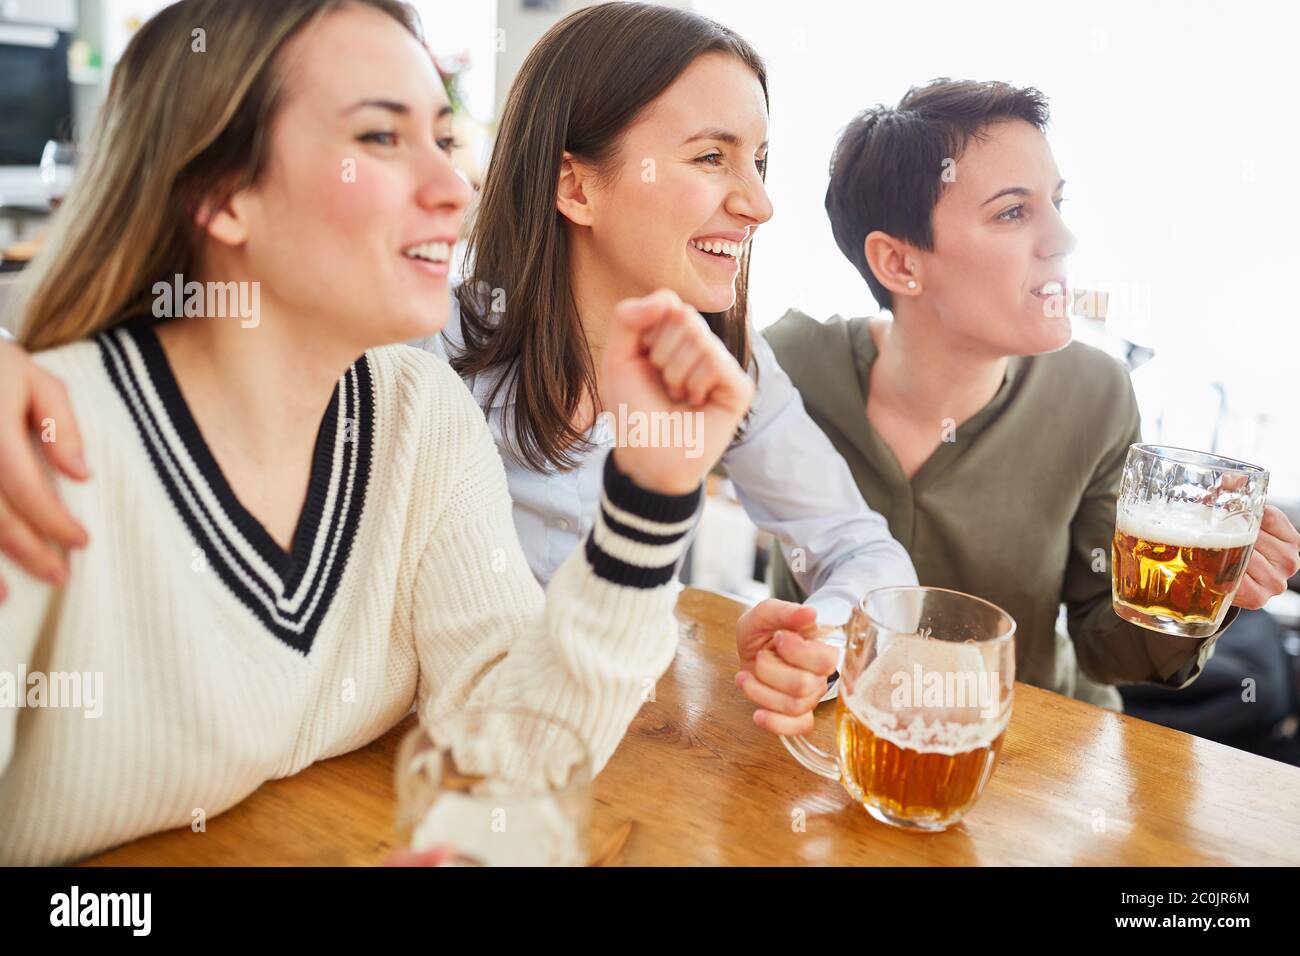 Eine Gruppe von Frauen gucken Fußball, trinken Bier und jubeln ihr Team an Stockfoto